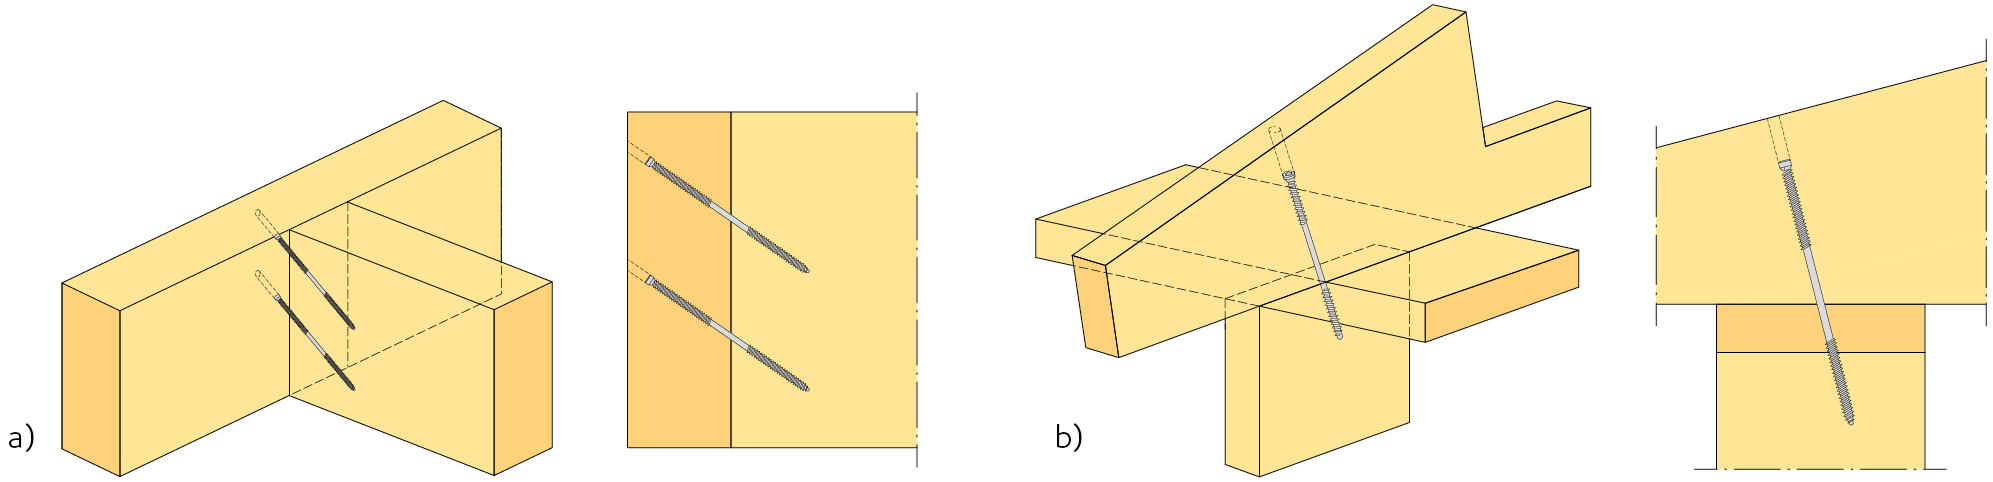 Figur 3.11 Exempel på förband med universalskruv.